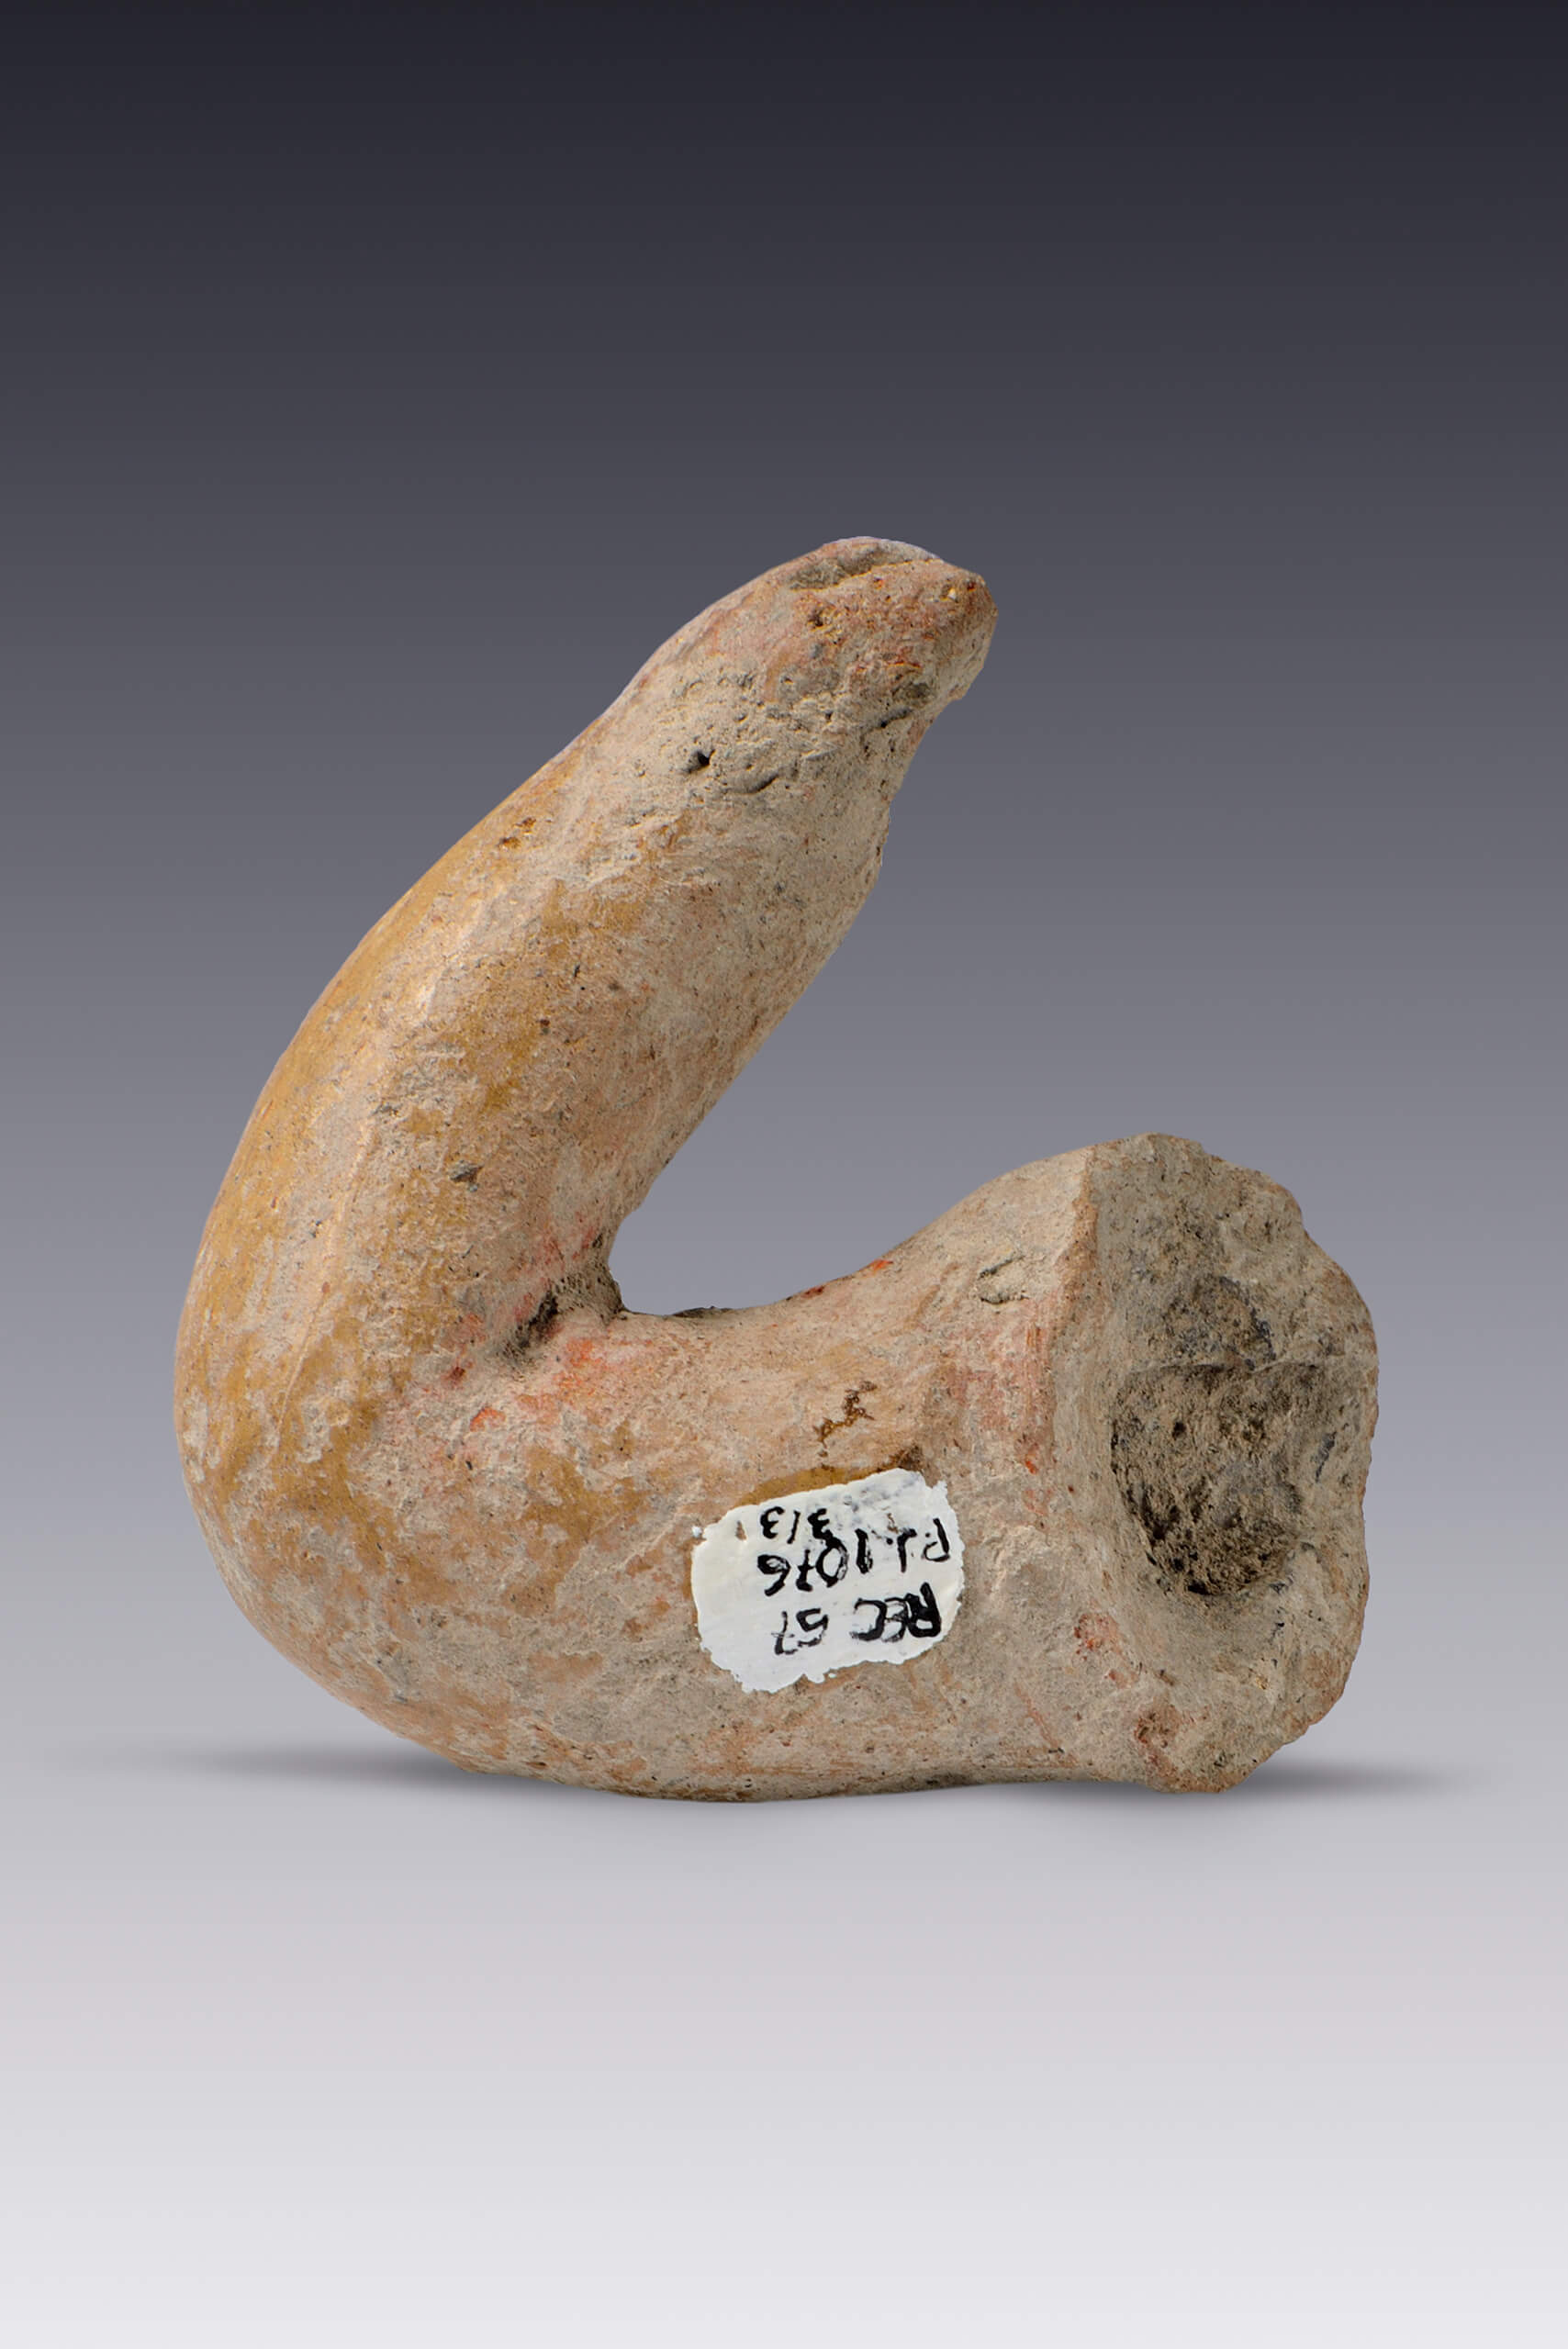 Piernas y brazo de figurillas | El tiempo en las cosas. Salas de Arte Contemporáneo | Museo Amparo, Puebla